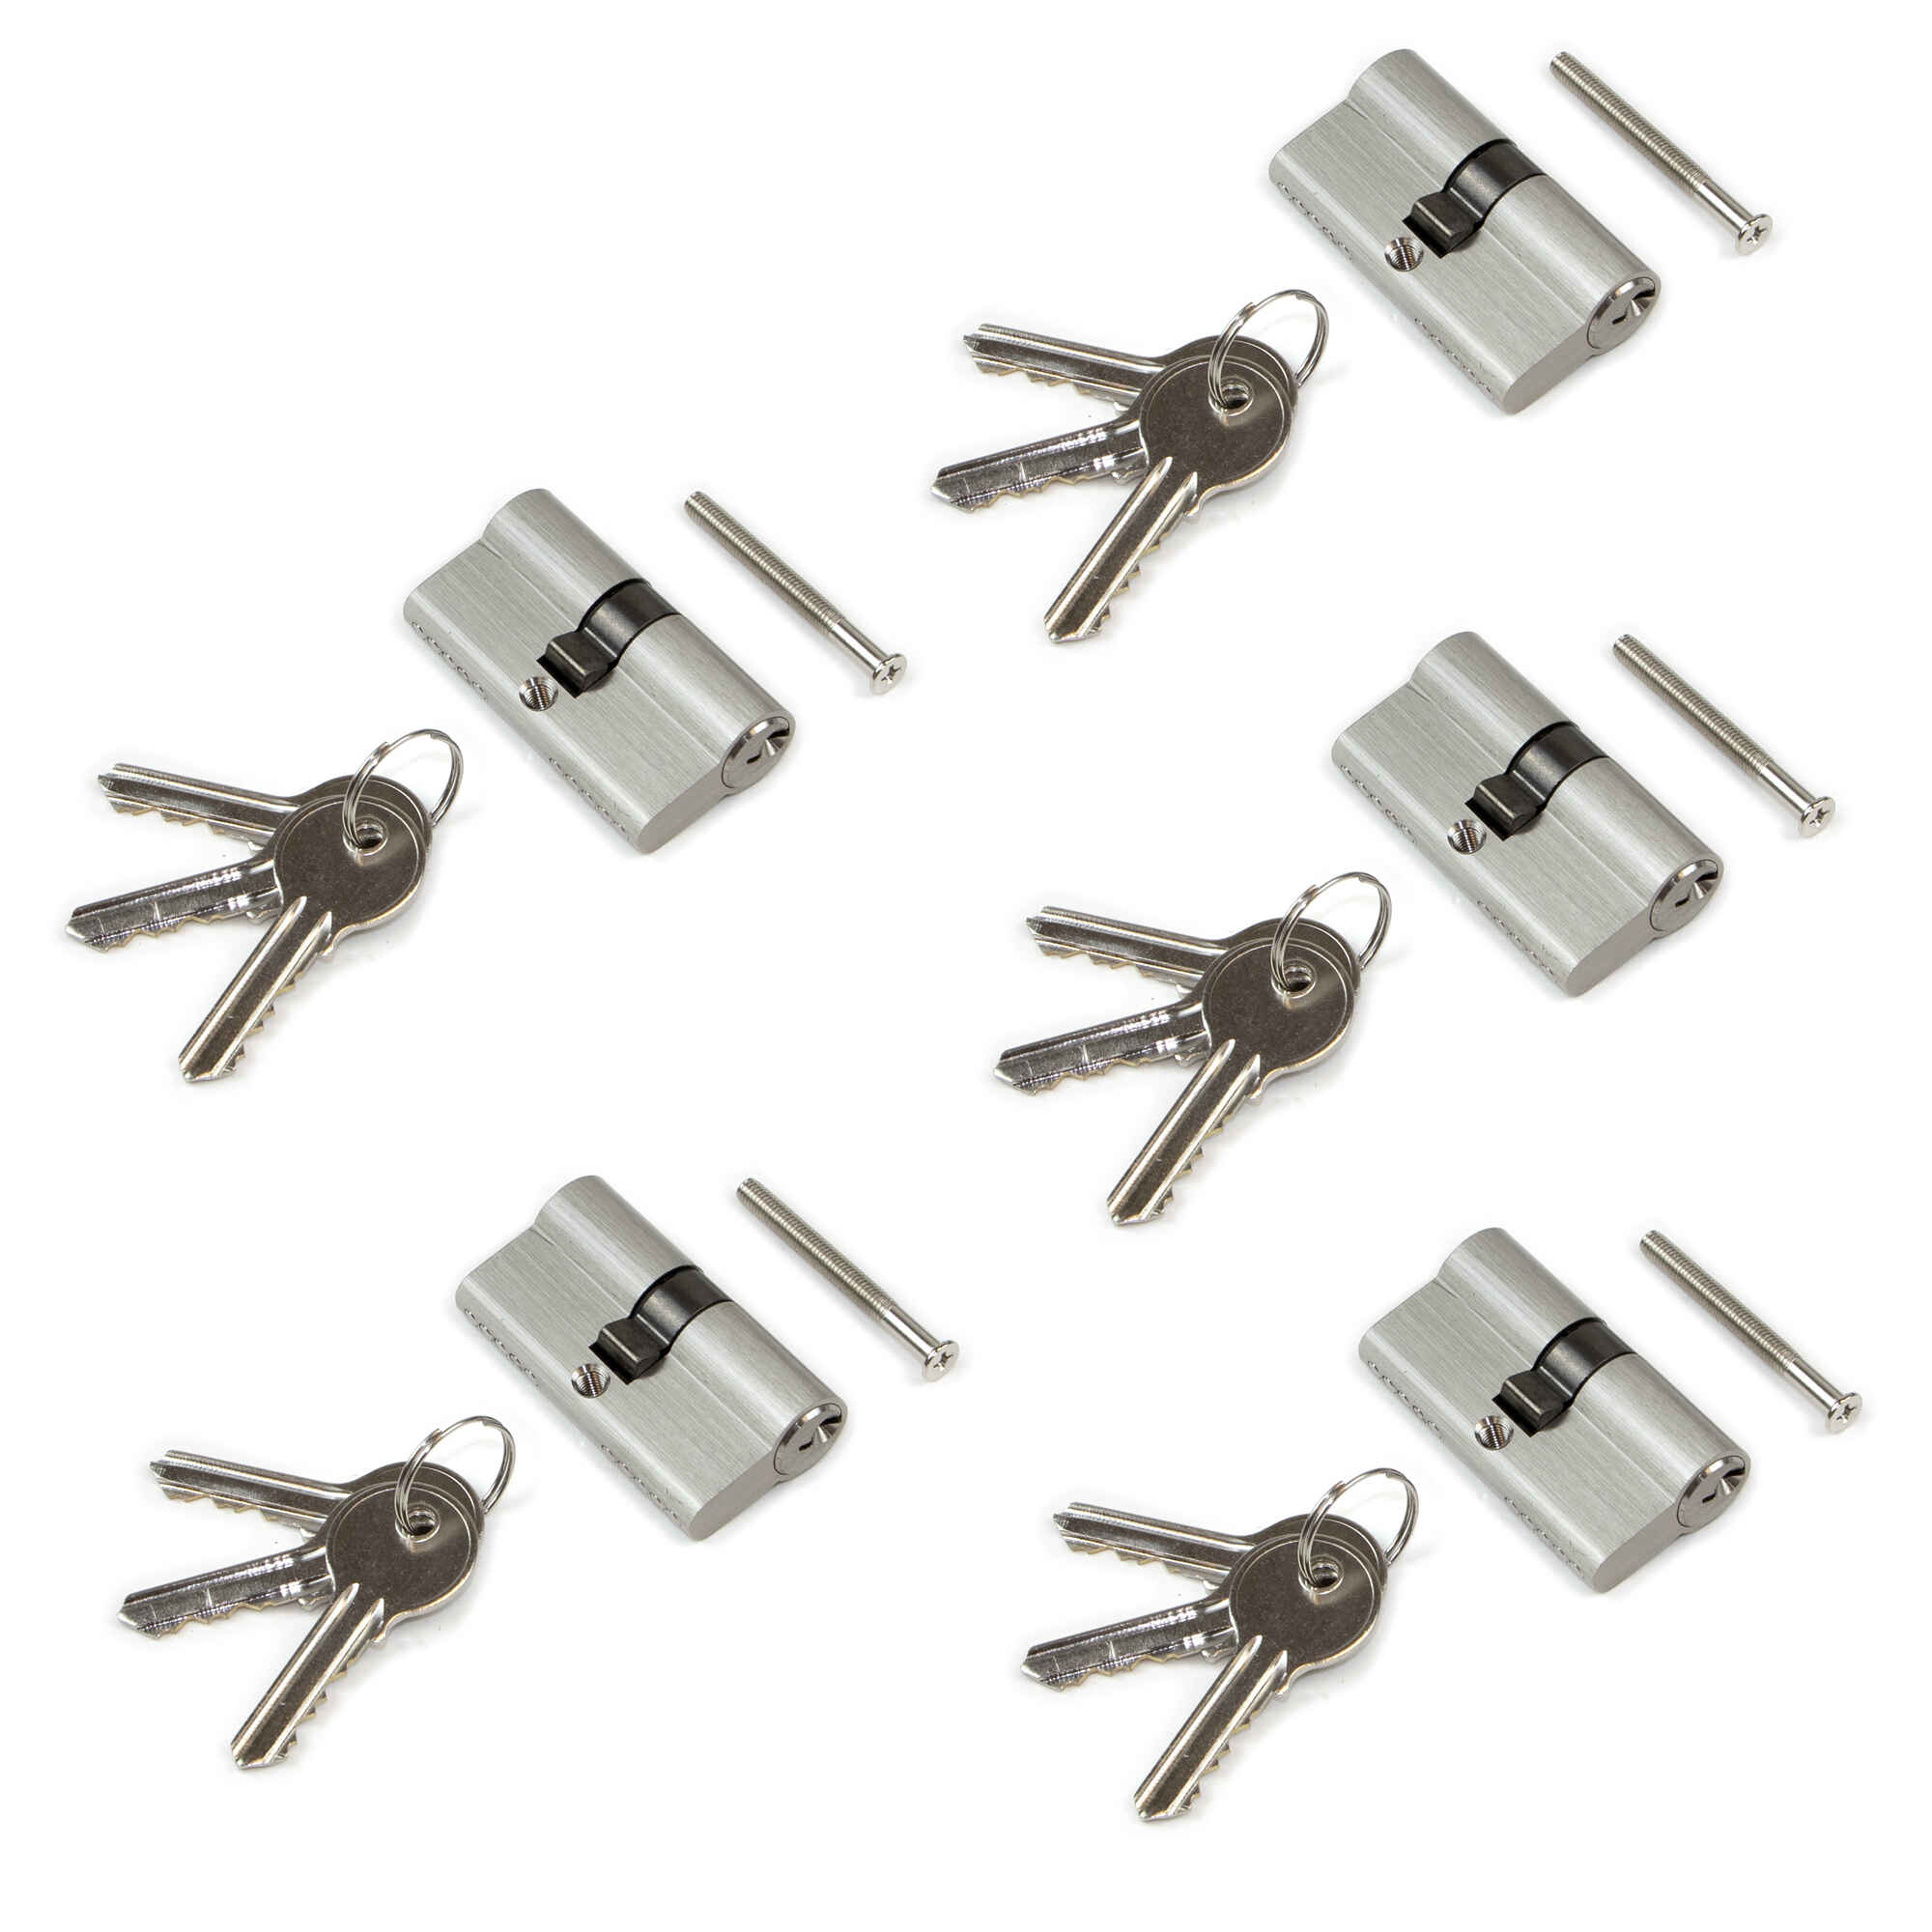 Cilindro cerradura tipo pera para puertas, 30 x 30 mm, embrague simple, leva larga, con 5 llaves, aluminio, níquel satinado, 5 sets.